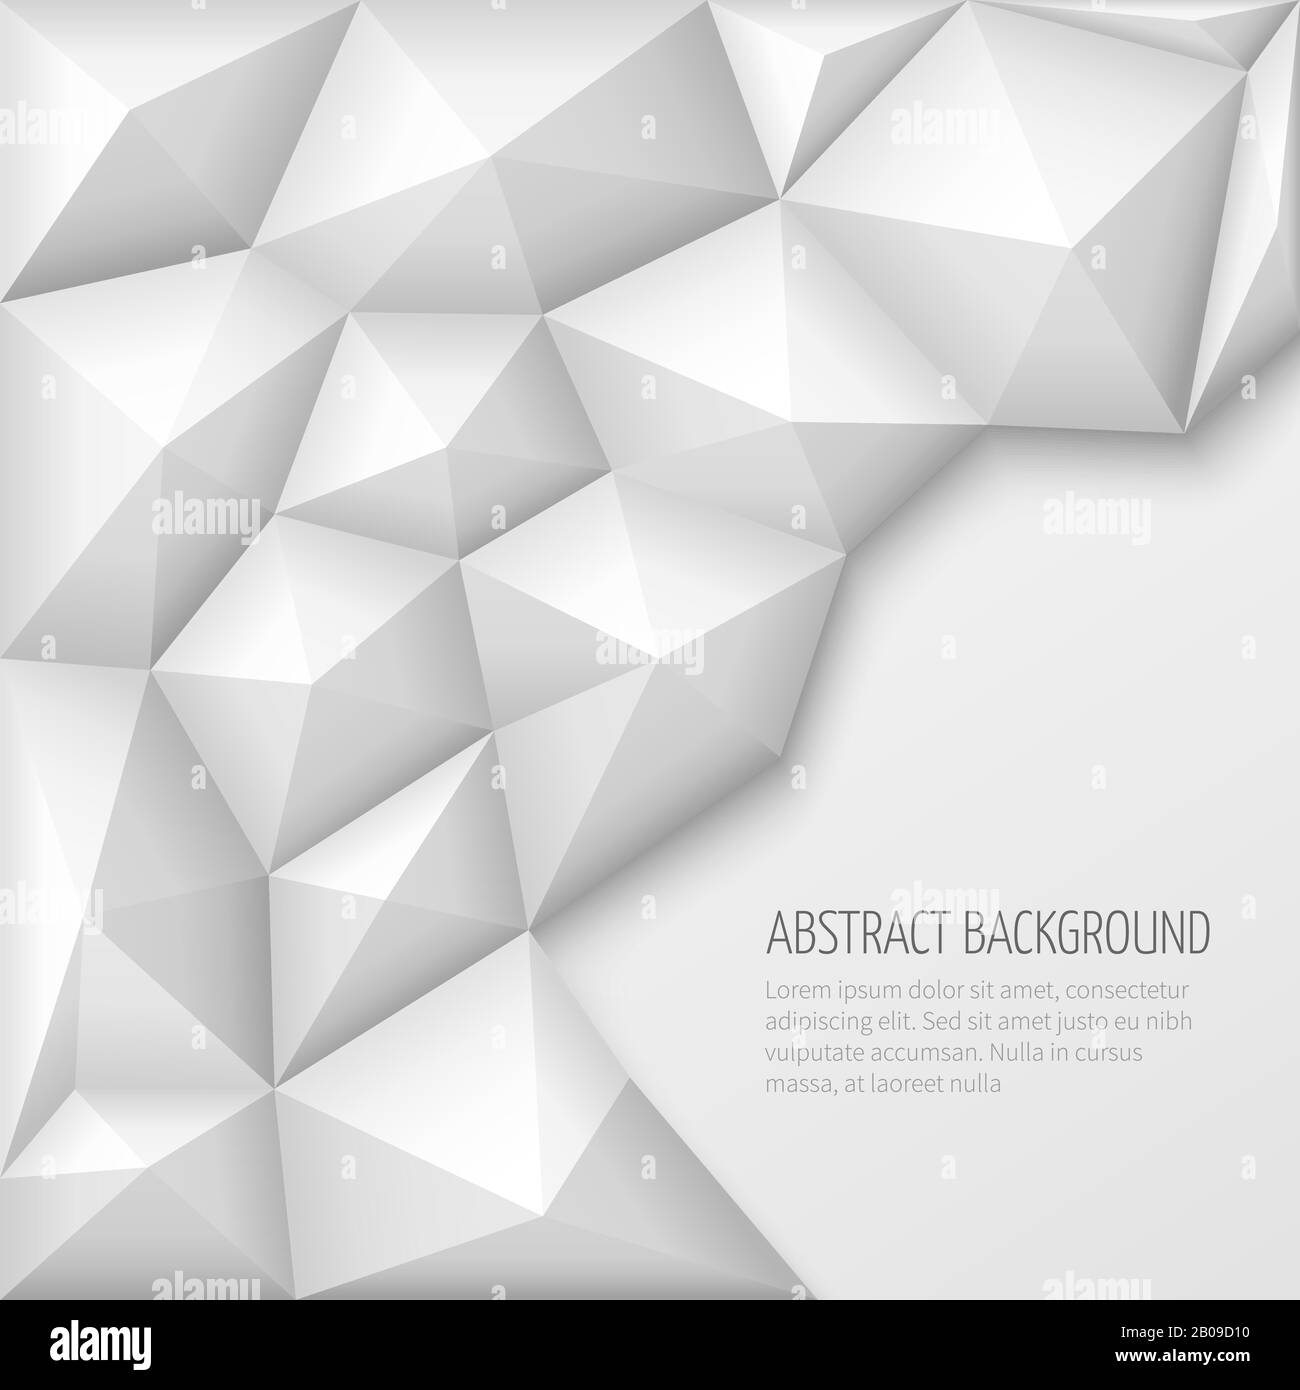 Weißer abstrakter 3D-Vektorhintergrund mit niedrigem Polygonmuster. Abstraktes Polygon, Dreieckshintergrund, Abbildung Stock Vektor